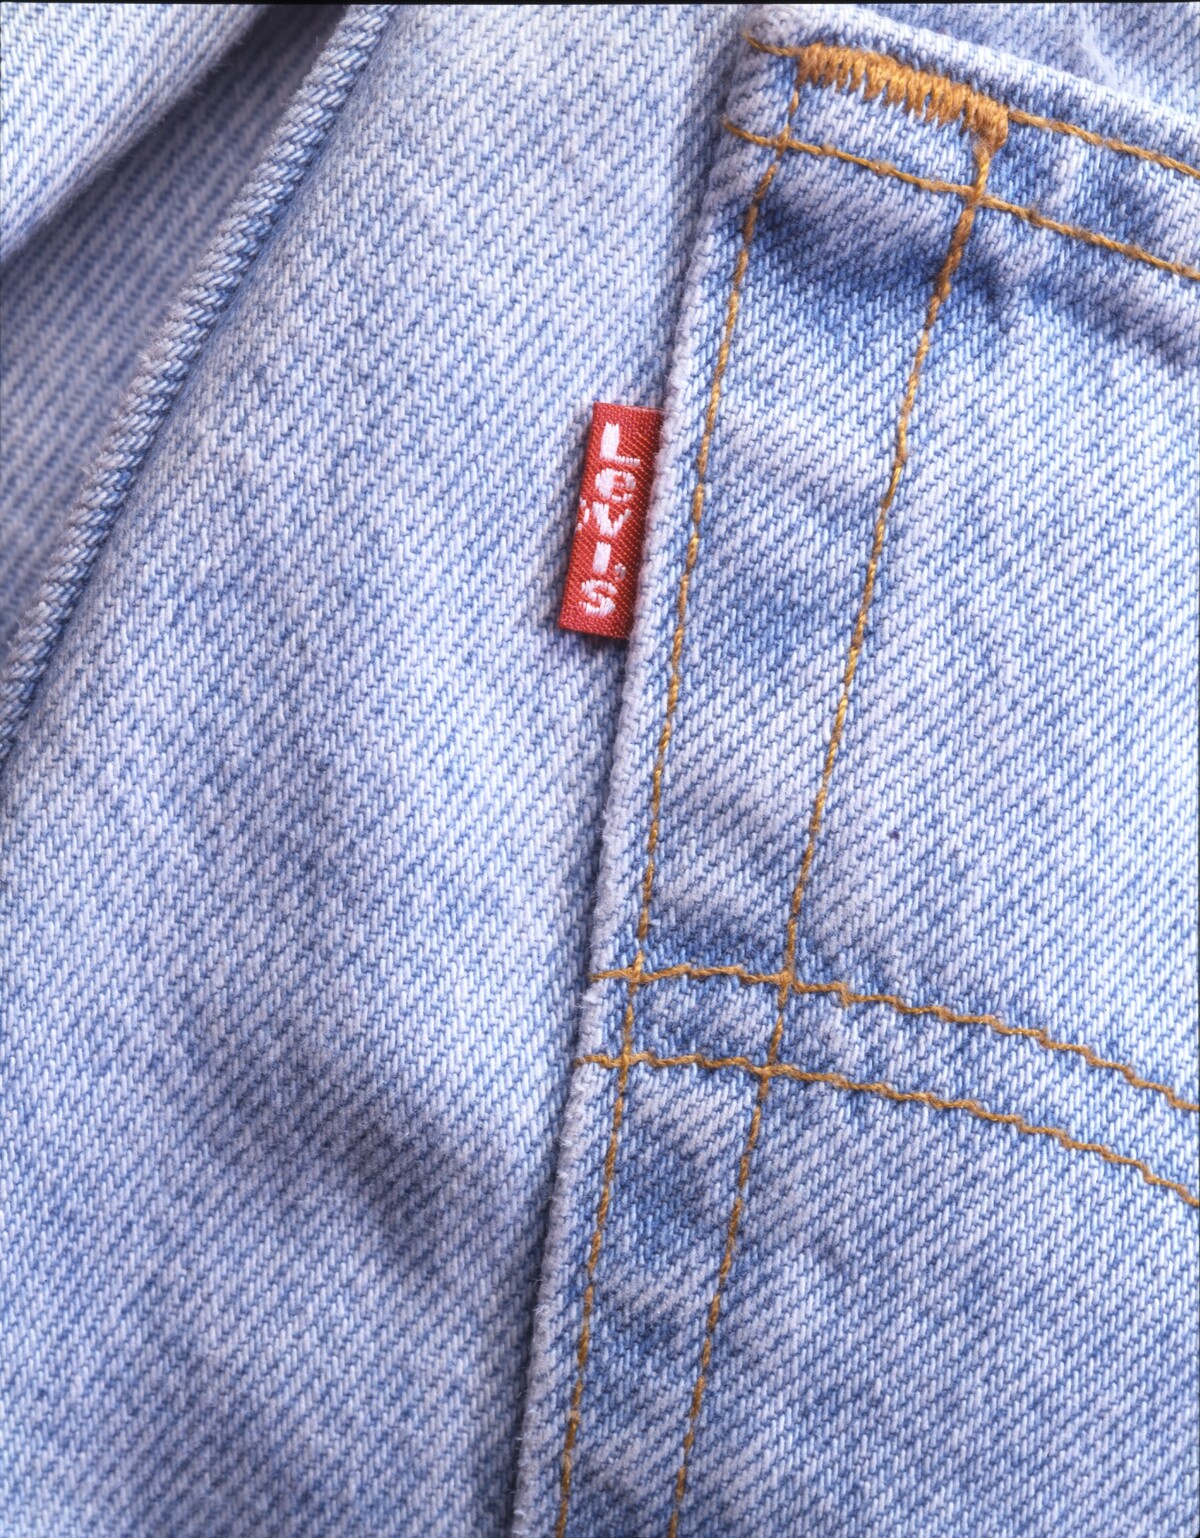 Další ikonická záležitost – malá červená visačka Levi's na kapse.